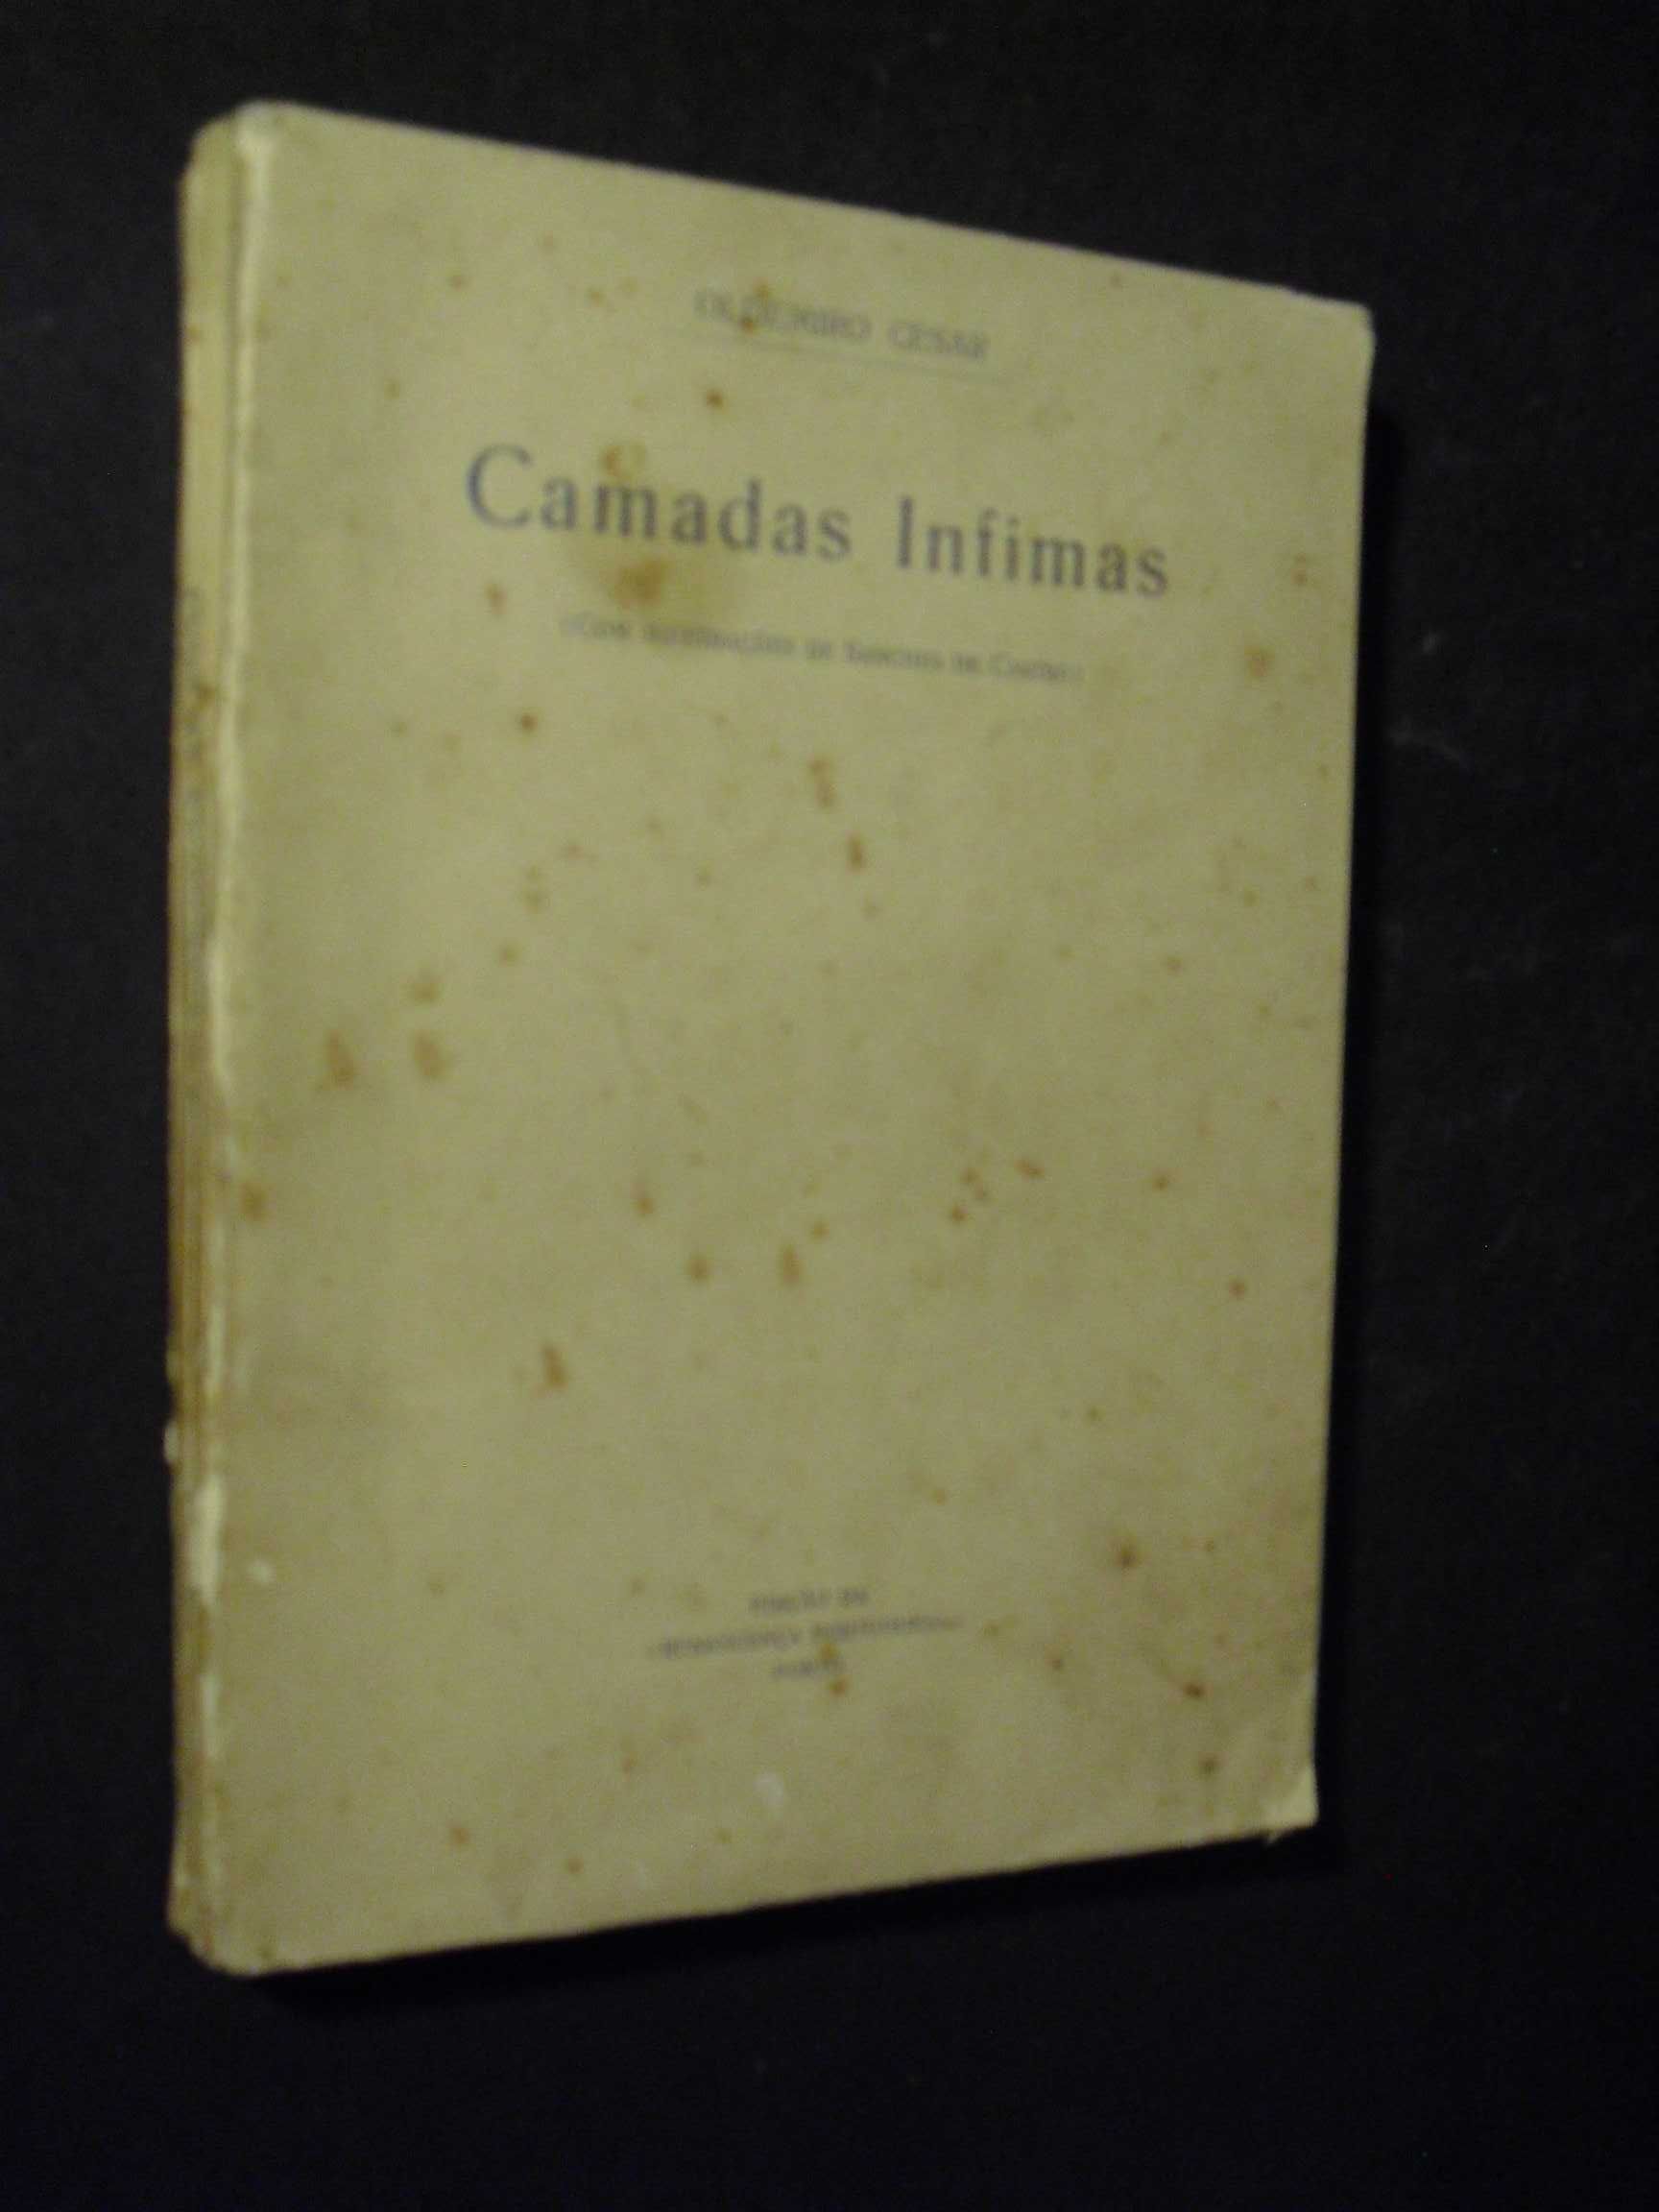 César (Oldemiro);Camadas Infímas;Edição da Renascença Portuguesa